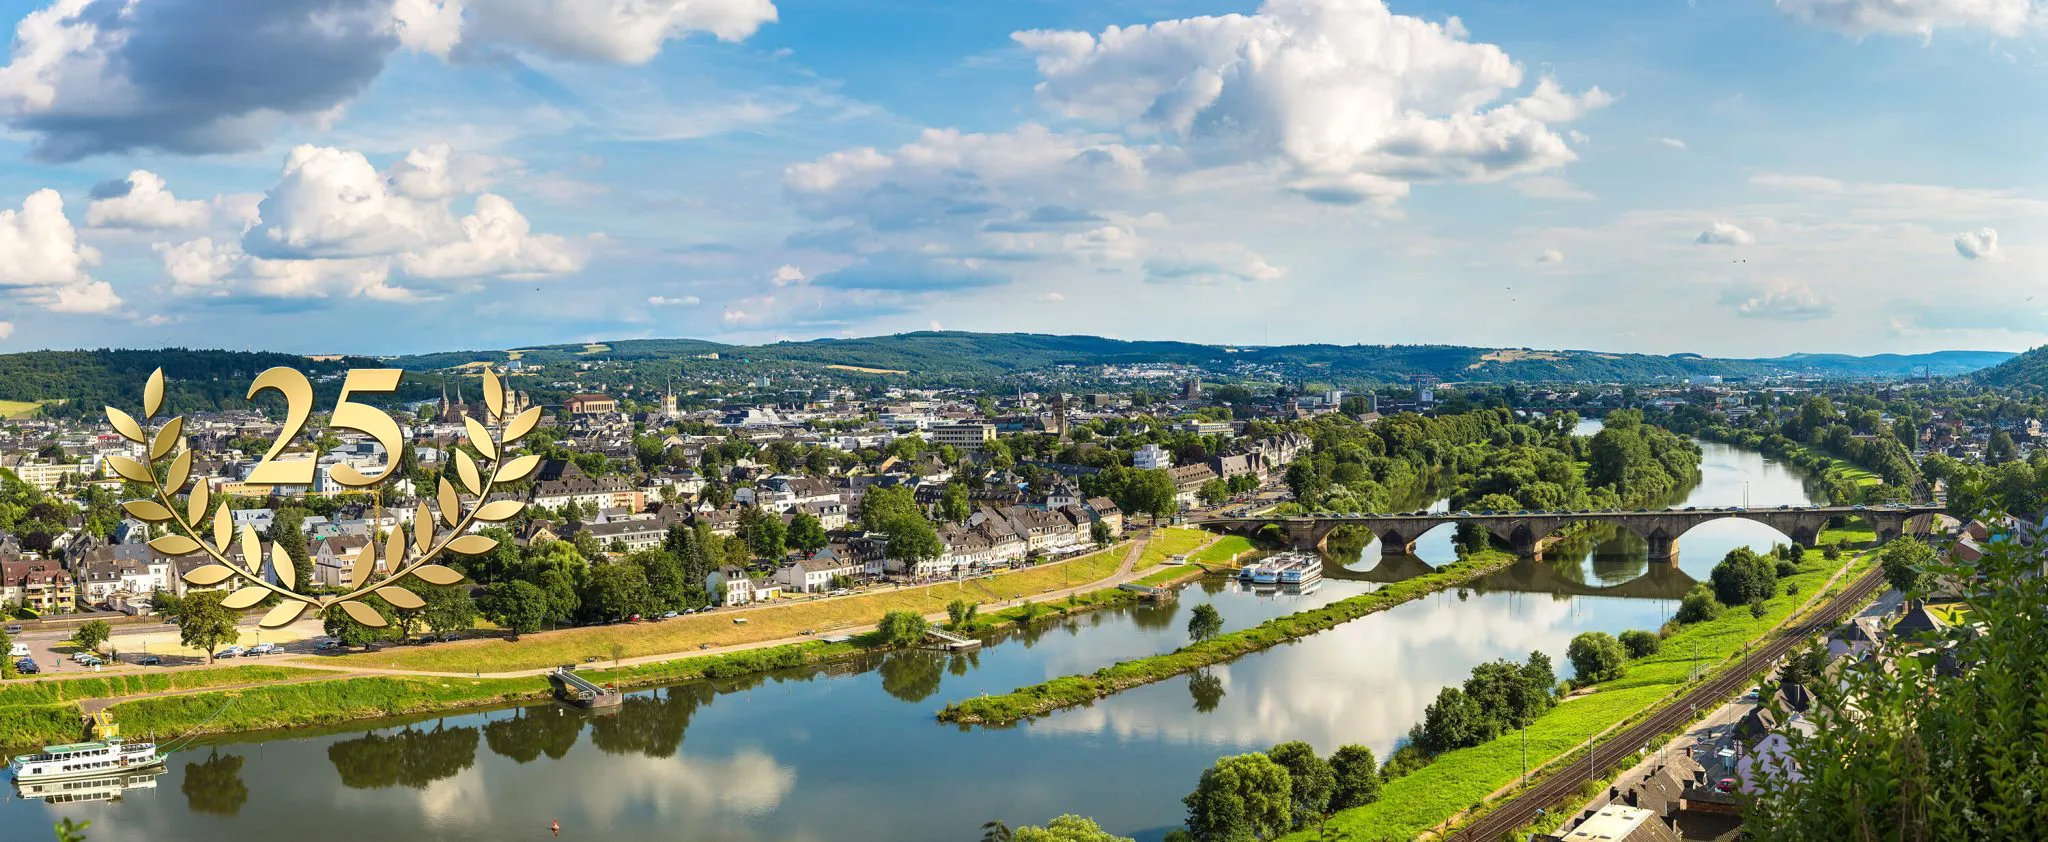 Volksbank Trier Immobilien - seit 25 Jahren Ihr Immobilienmakler in Trier und der Region